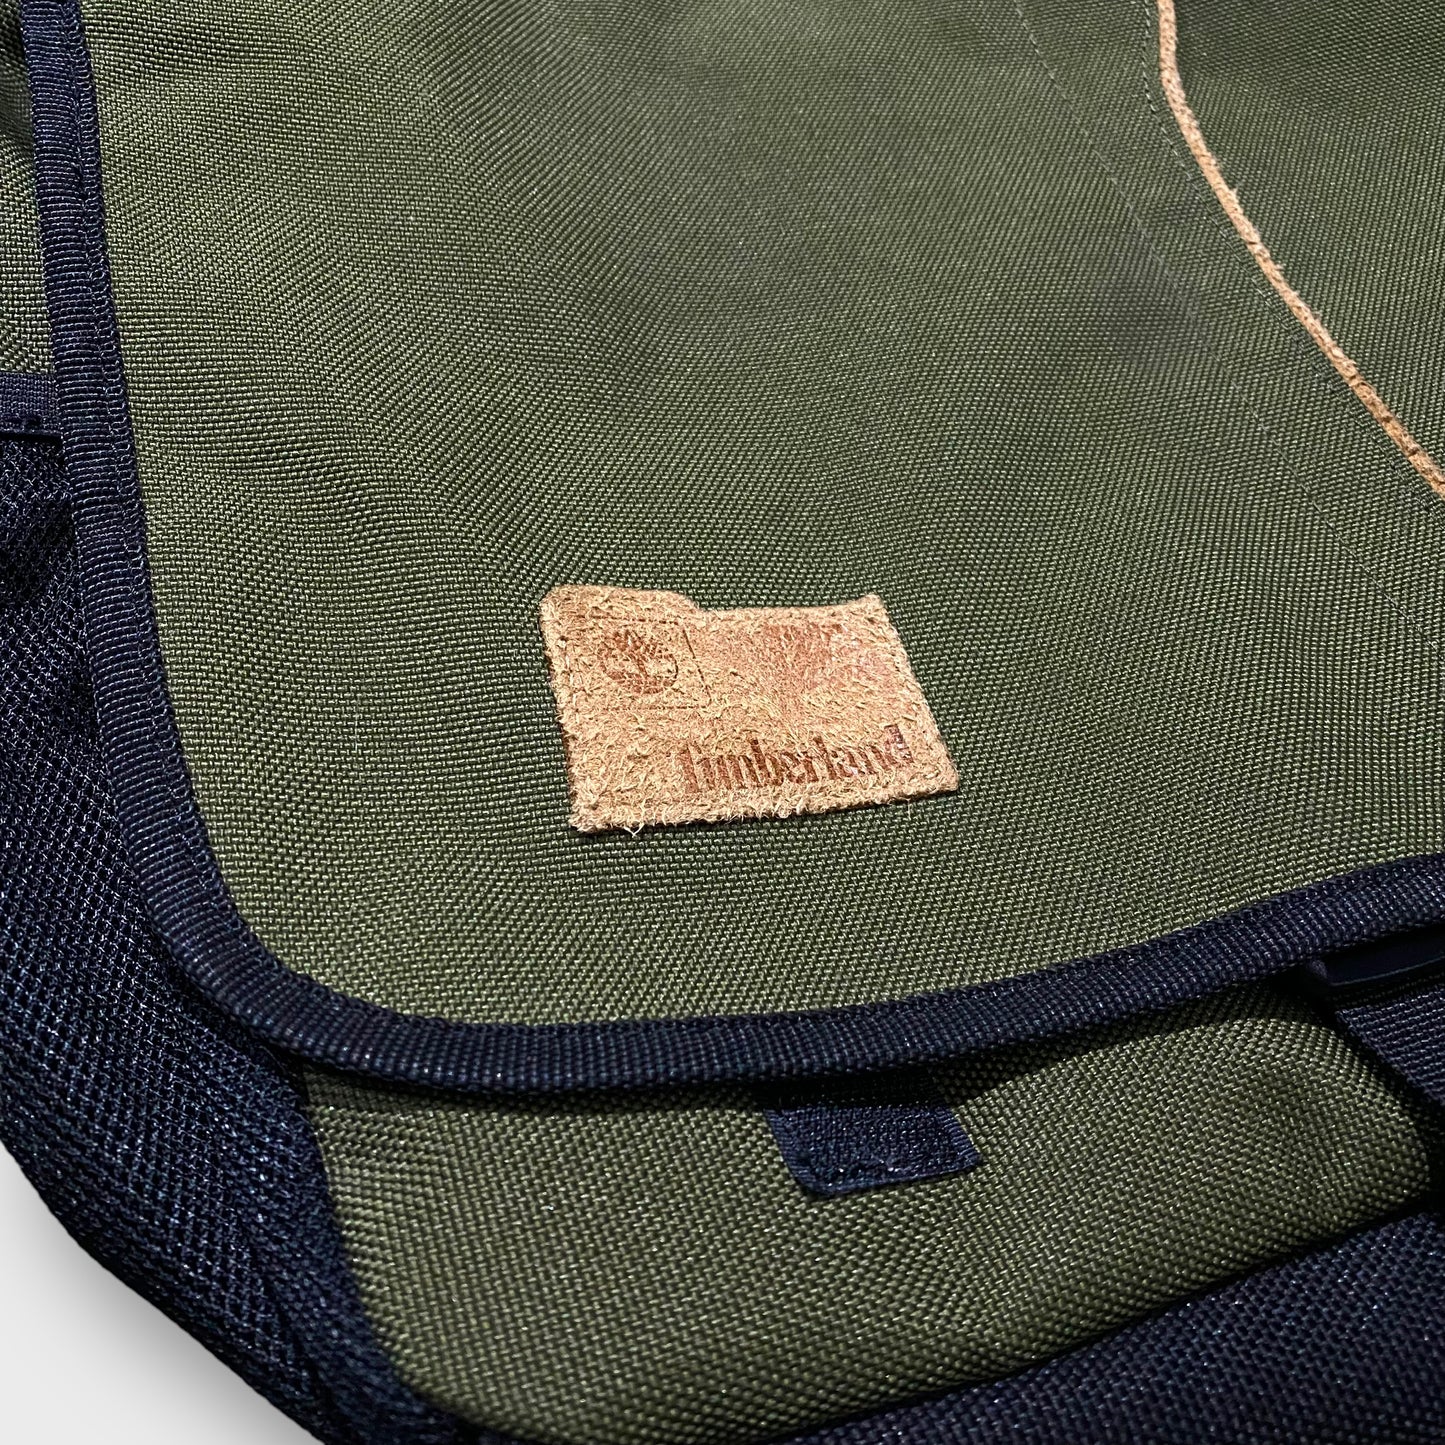 "Timberland" Shoulder bag